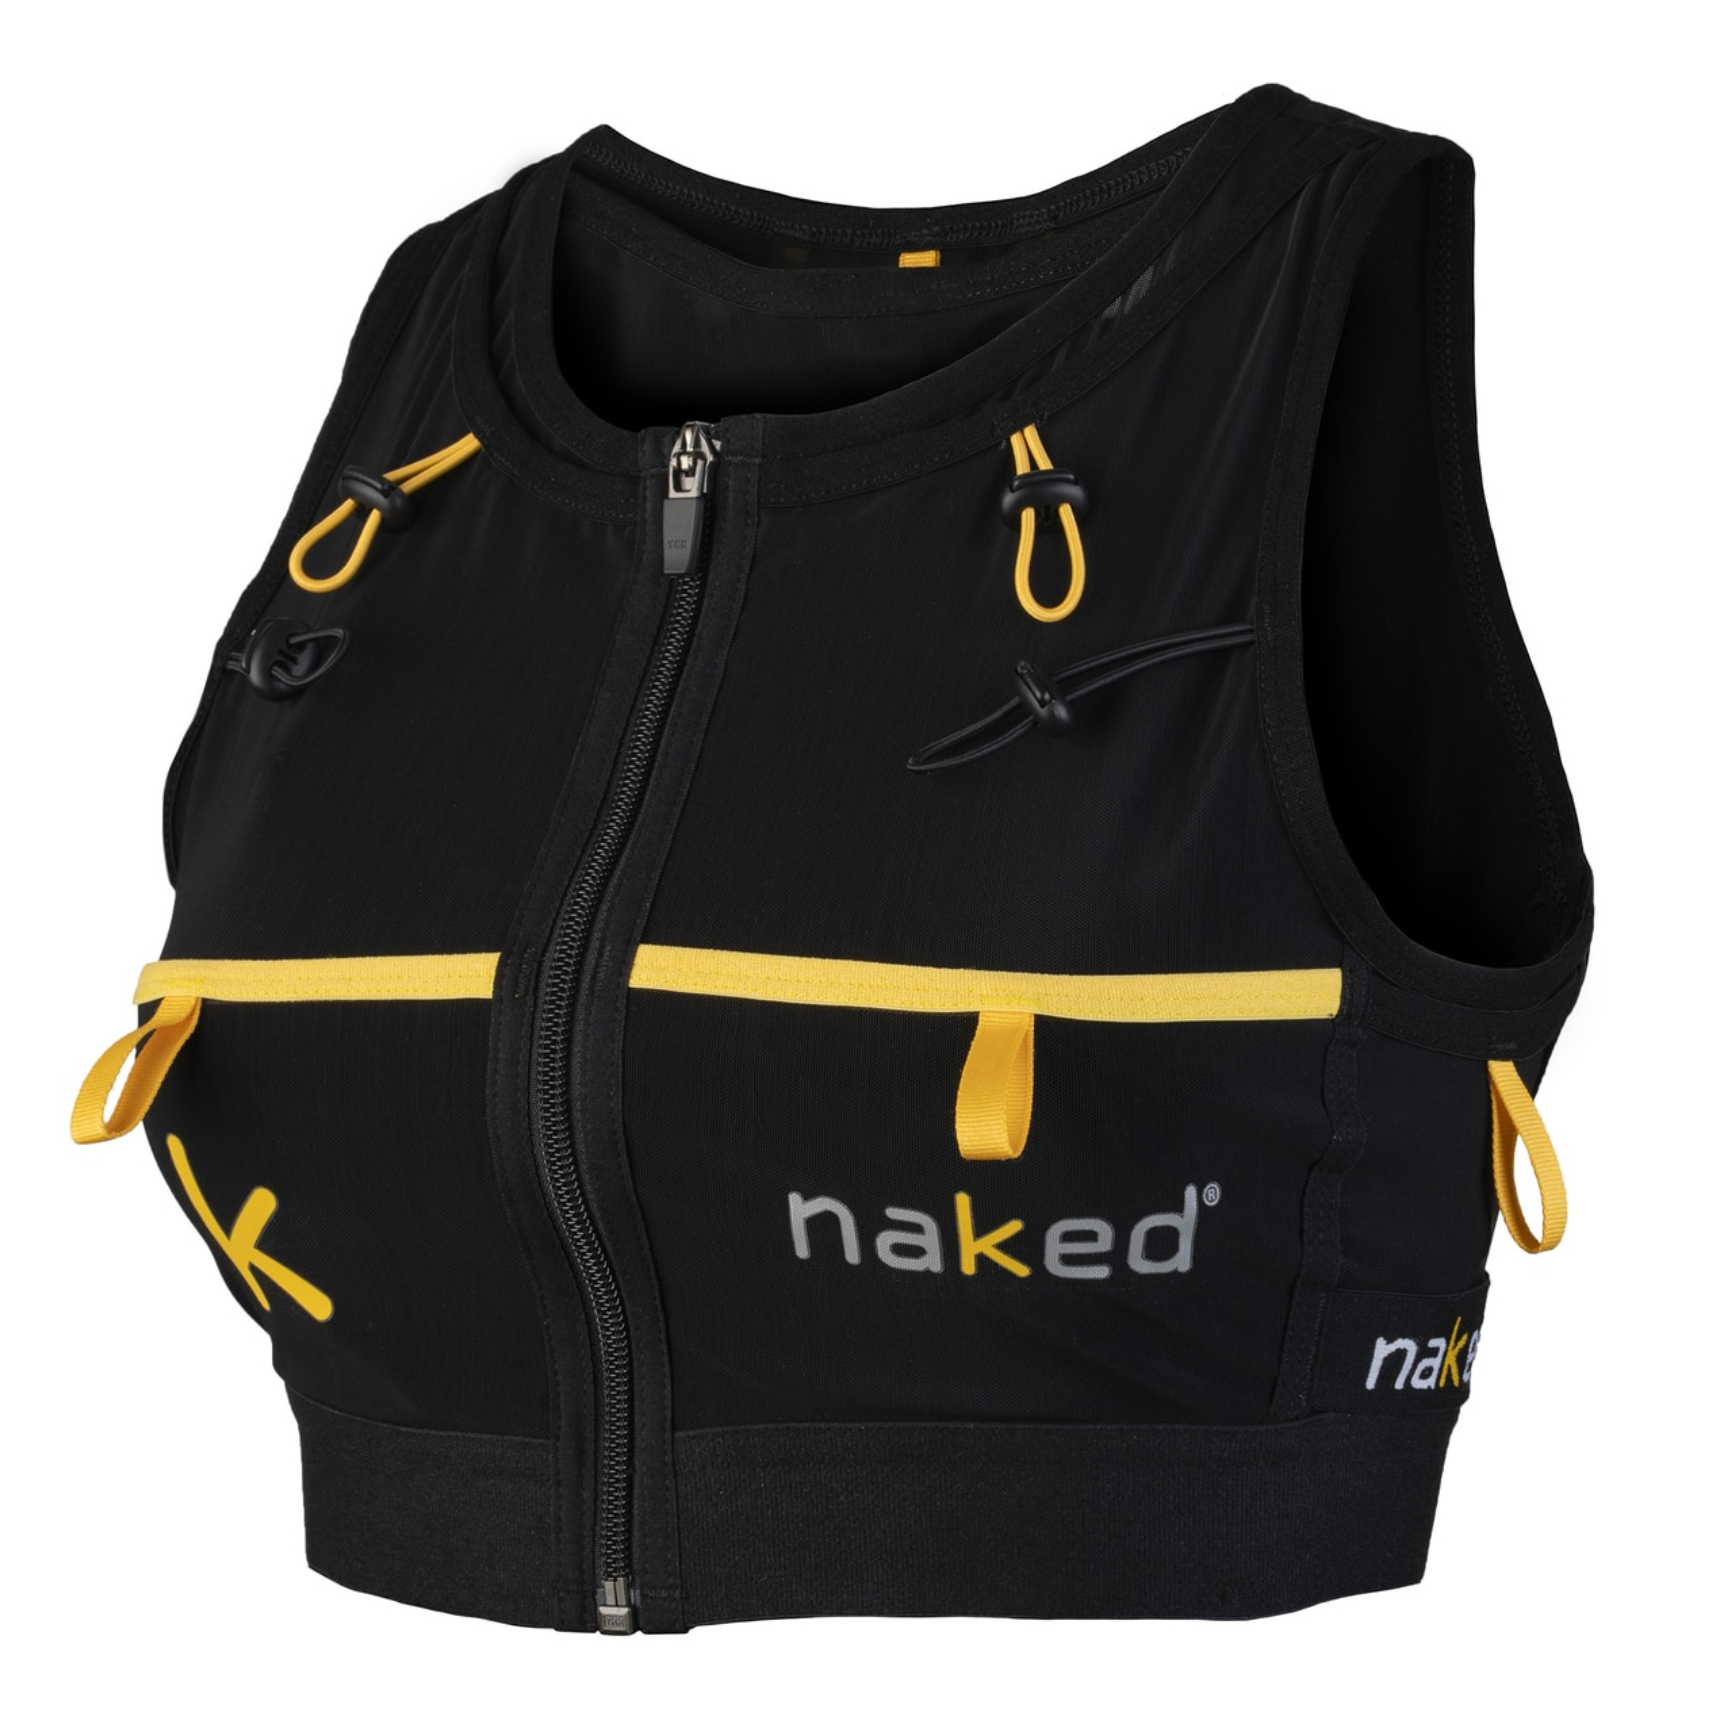 Naked HC High Capacity Running Vest Women's